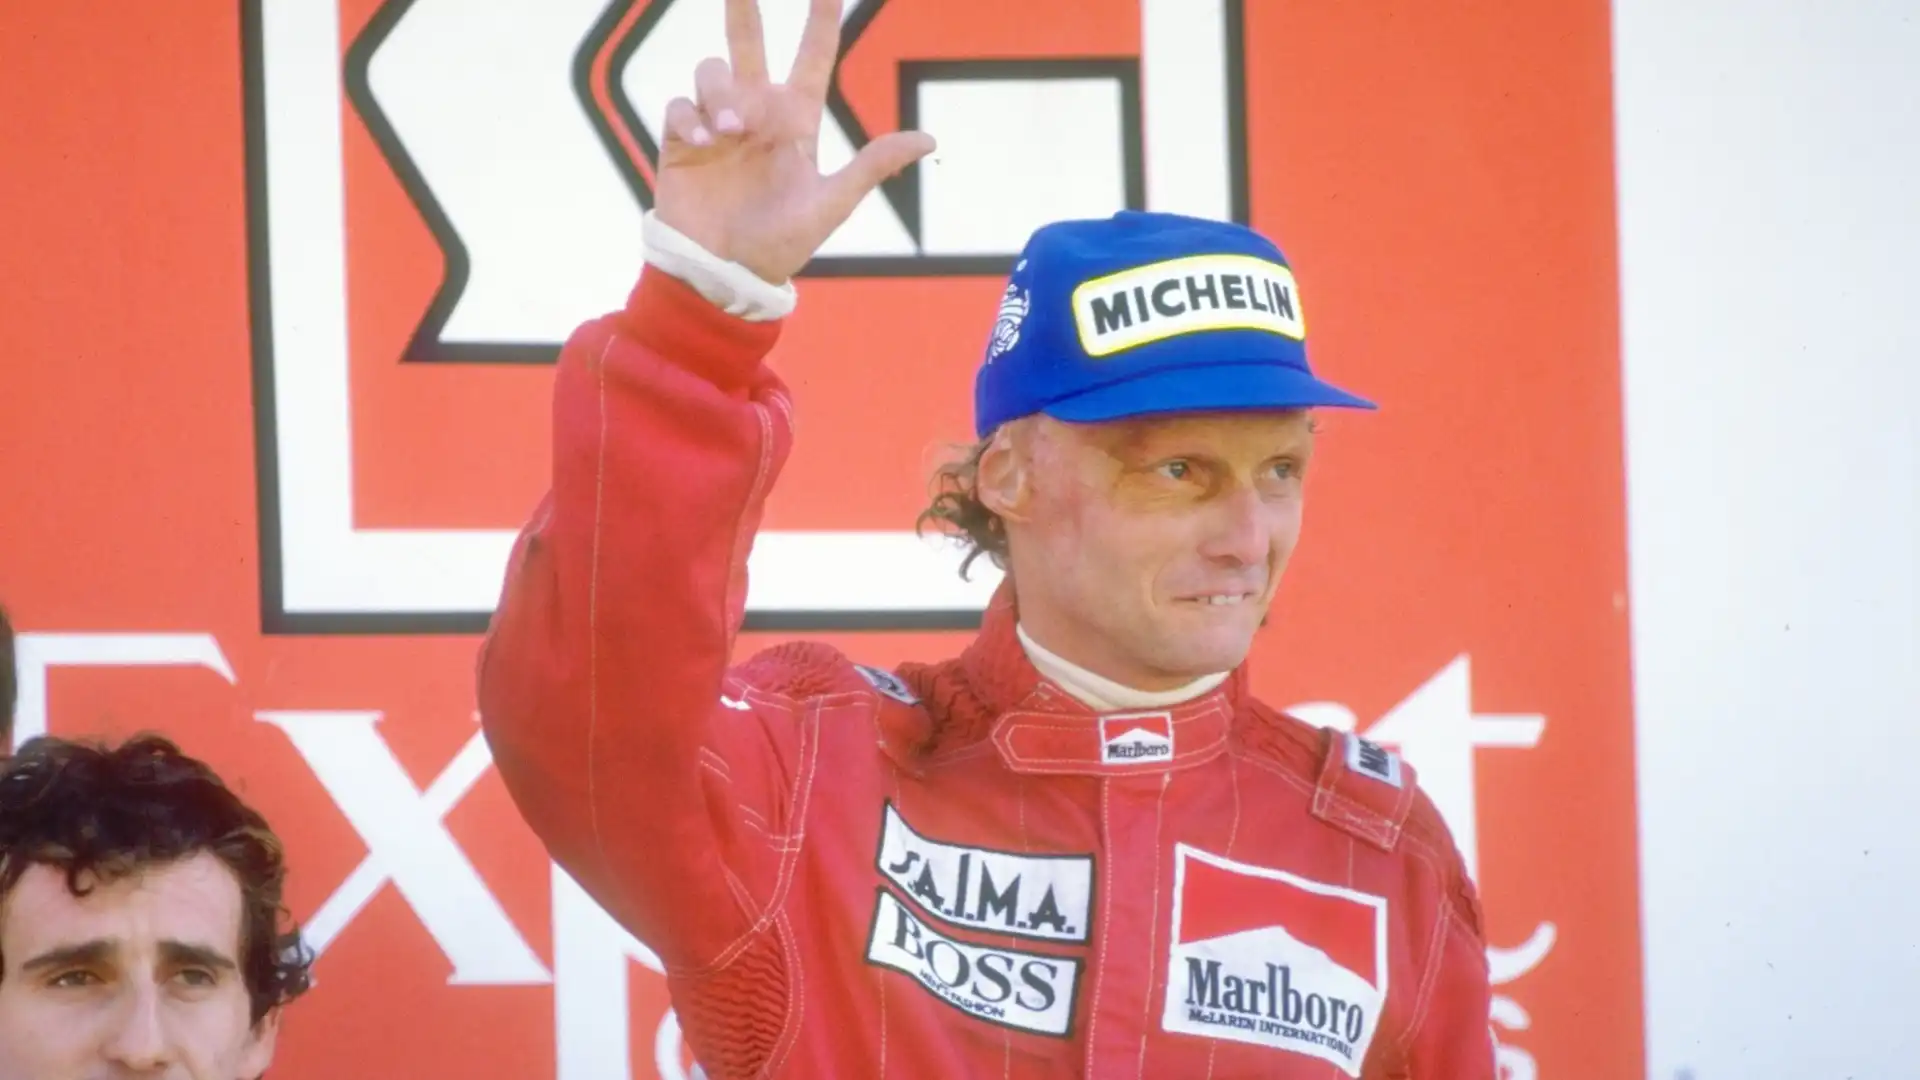 5. Niki Lauda (Austria): patrimonio netto complessivo 296.5 milioni di dollari